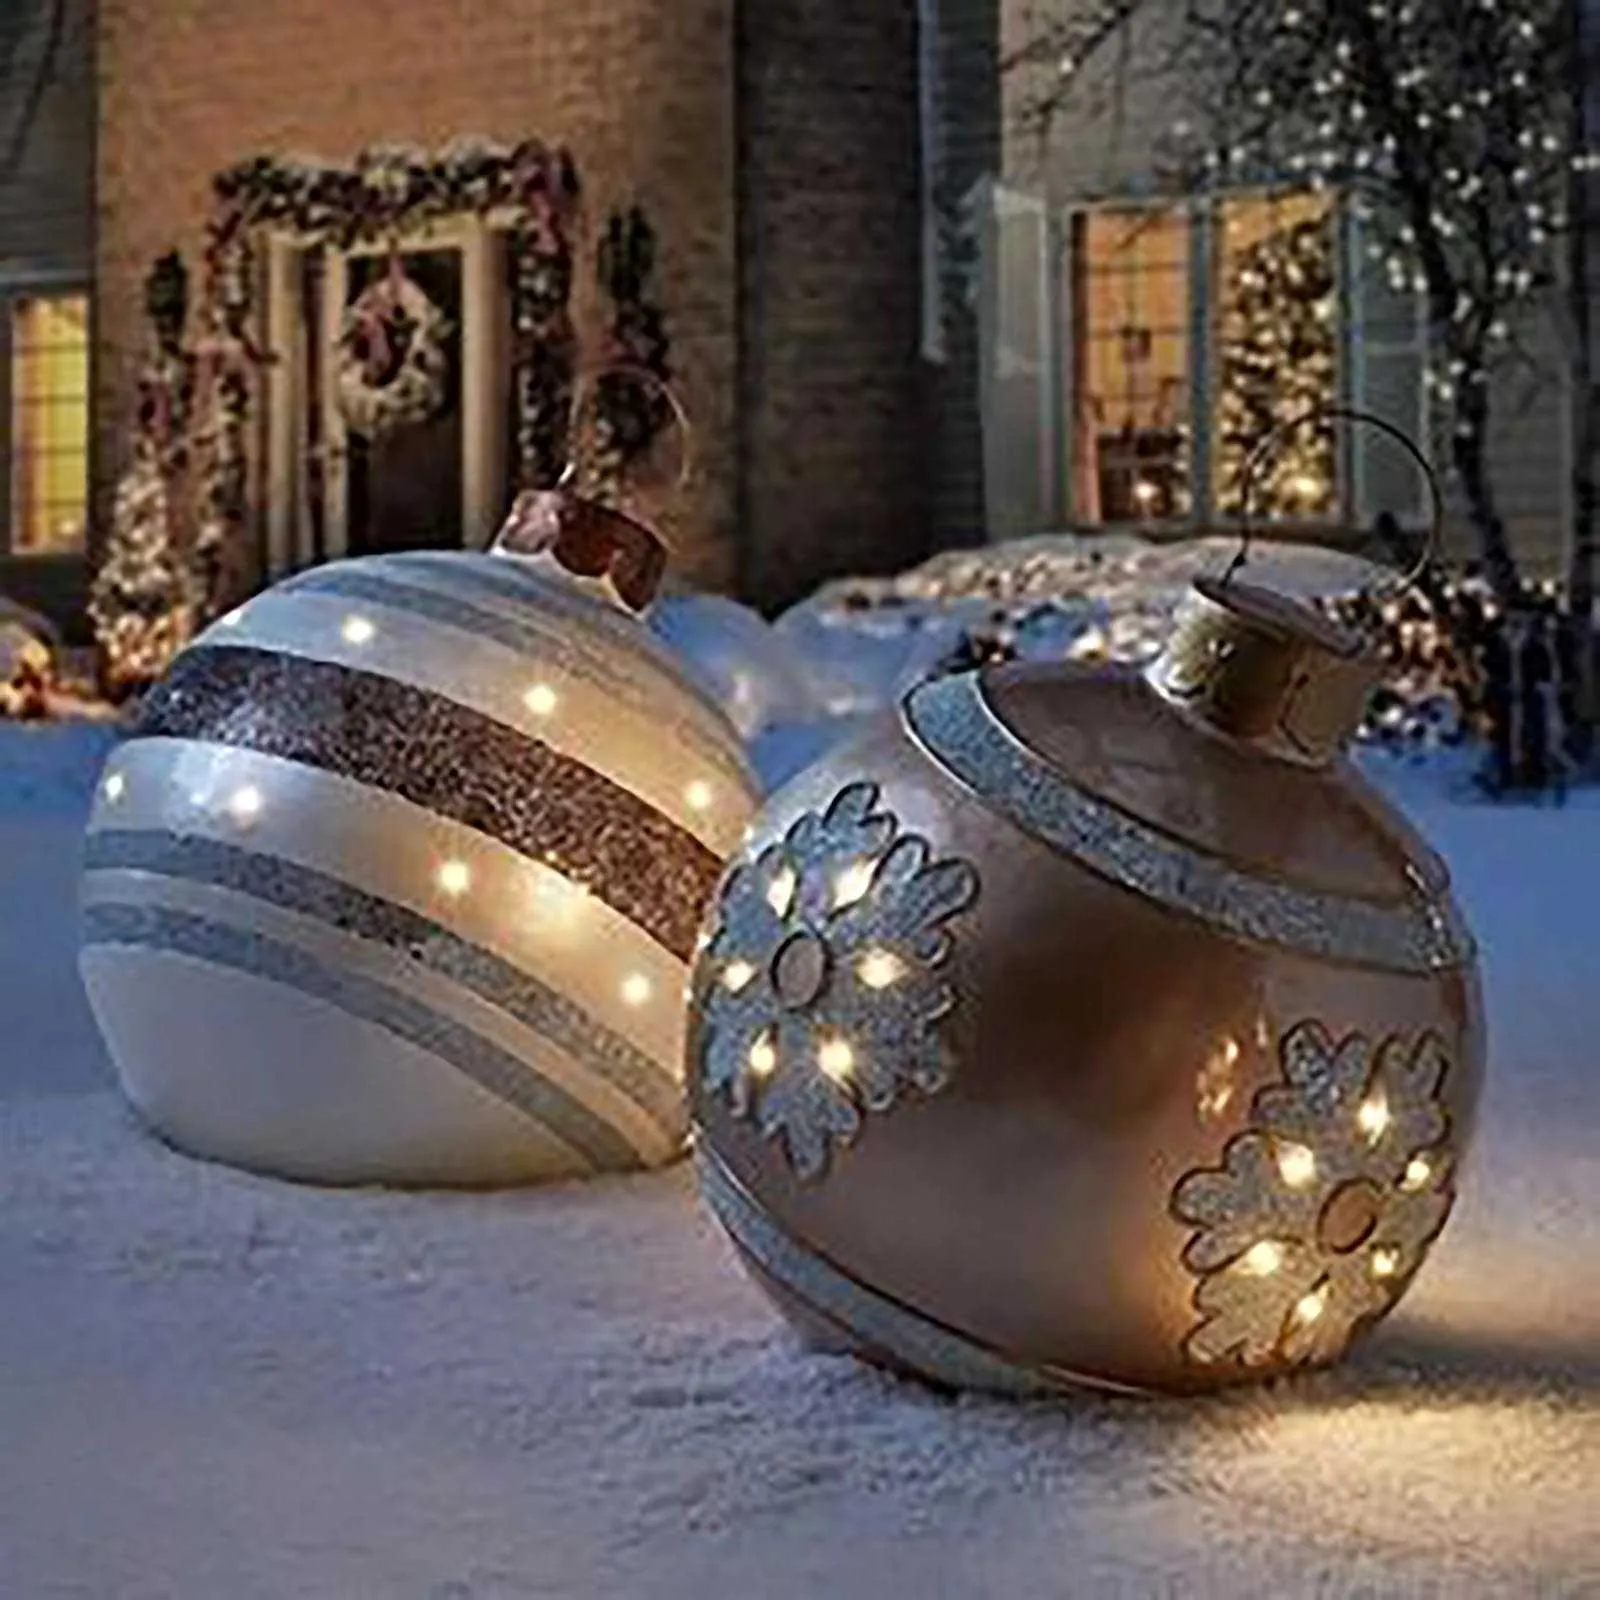 60cm bolas de natal decorações de árvore presente natal hristmas para casa ao ar livre pvc brinquedos infláveis 2110188456014